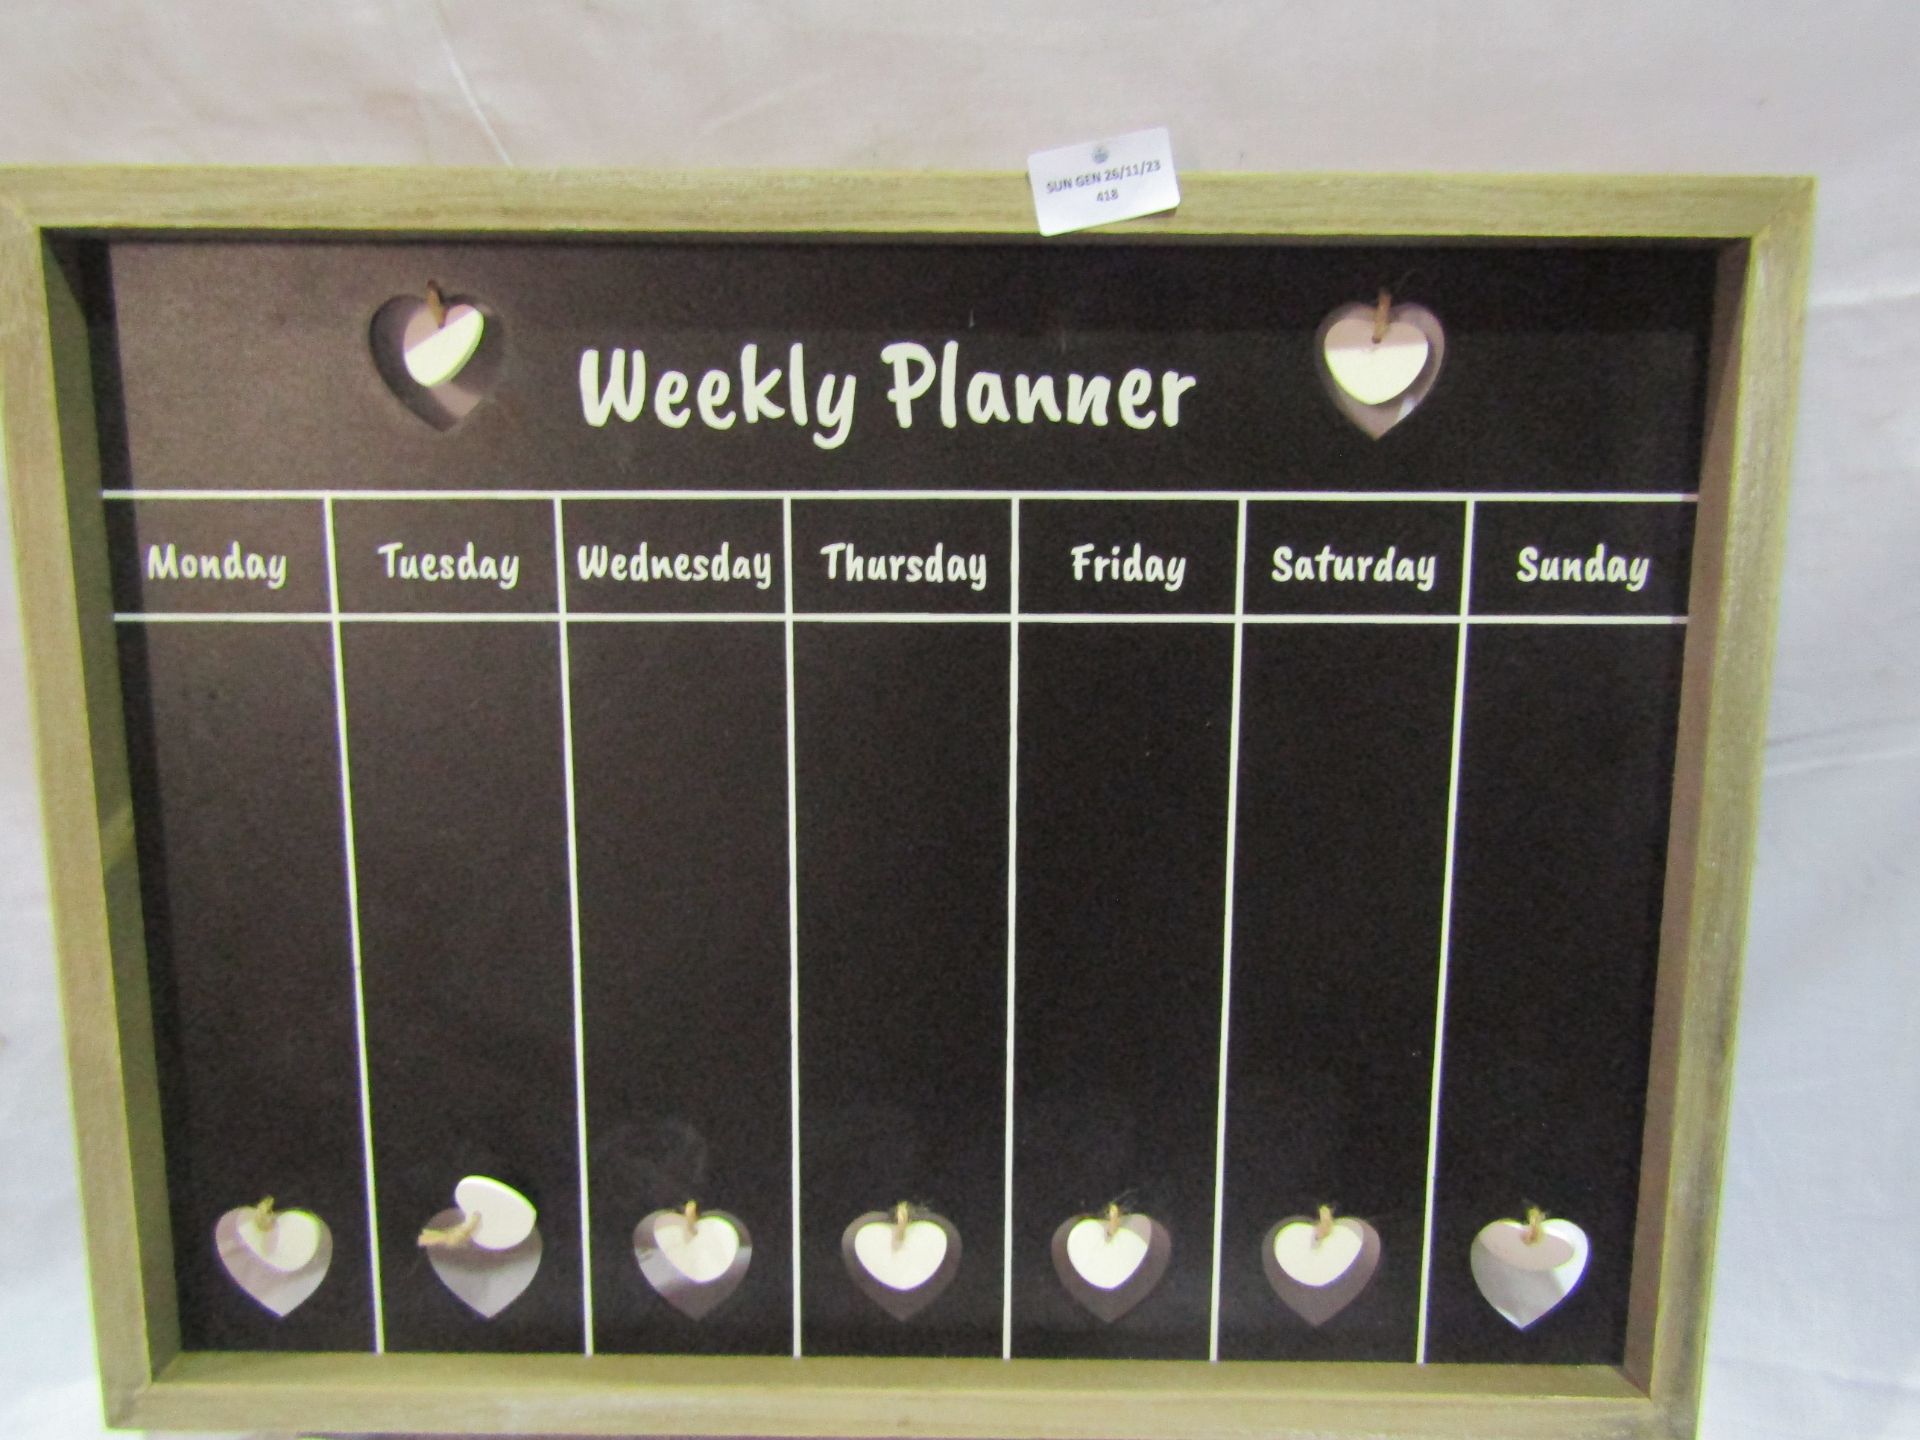 Weekly Planner Board Looks Unused